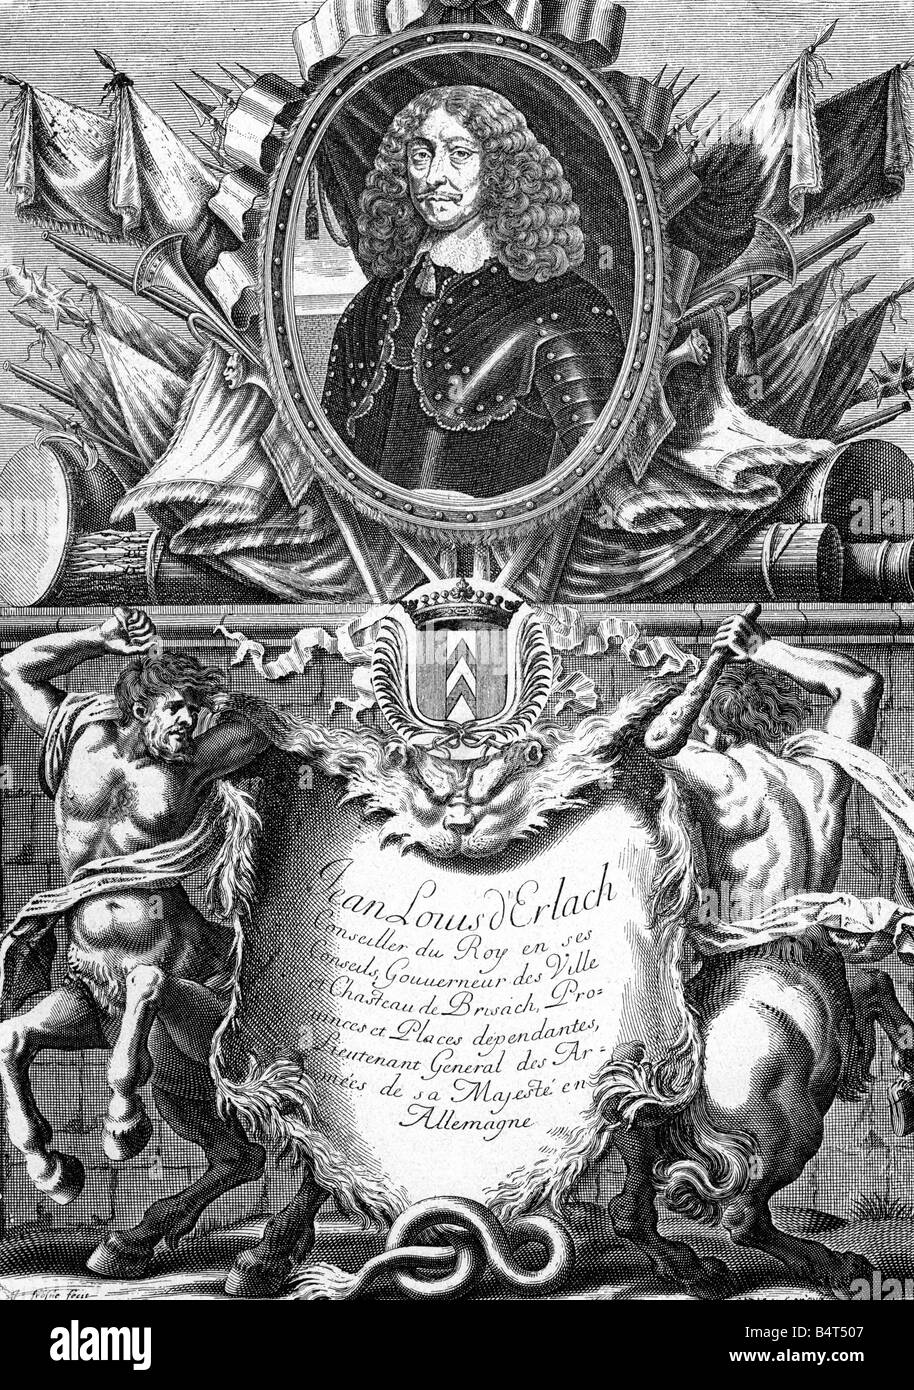 Erlach, Johann Ludwig, 1595 - 26.1.1650, général suisse portrait allégorique, à la frontière, après la gravure sur bois Gravure sur cuivre du 17e siècle, l'artiste n'a pas d'auteur pour être effacé Banque D'Images